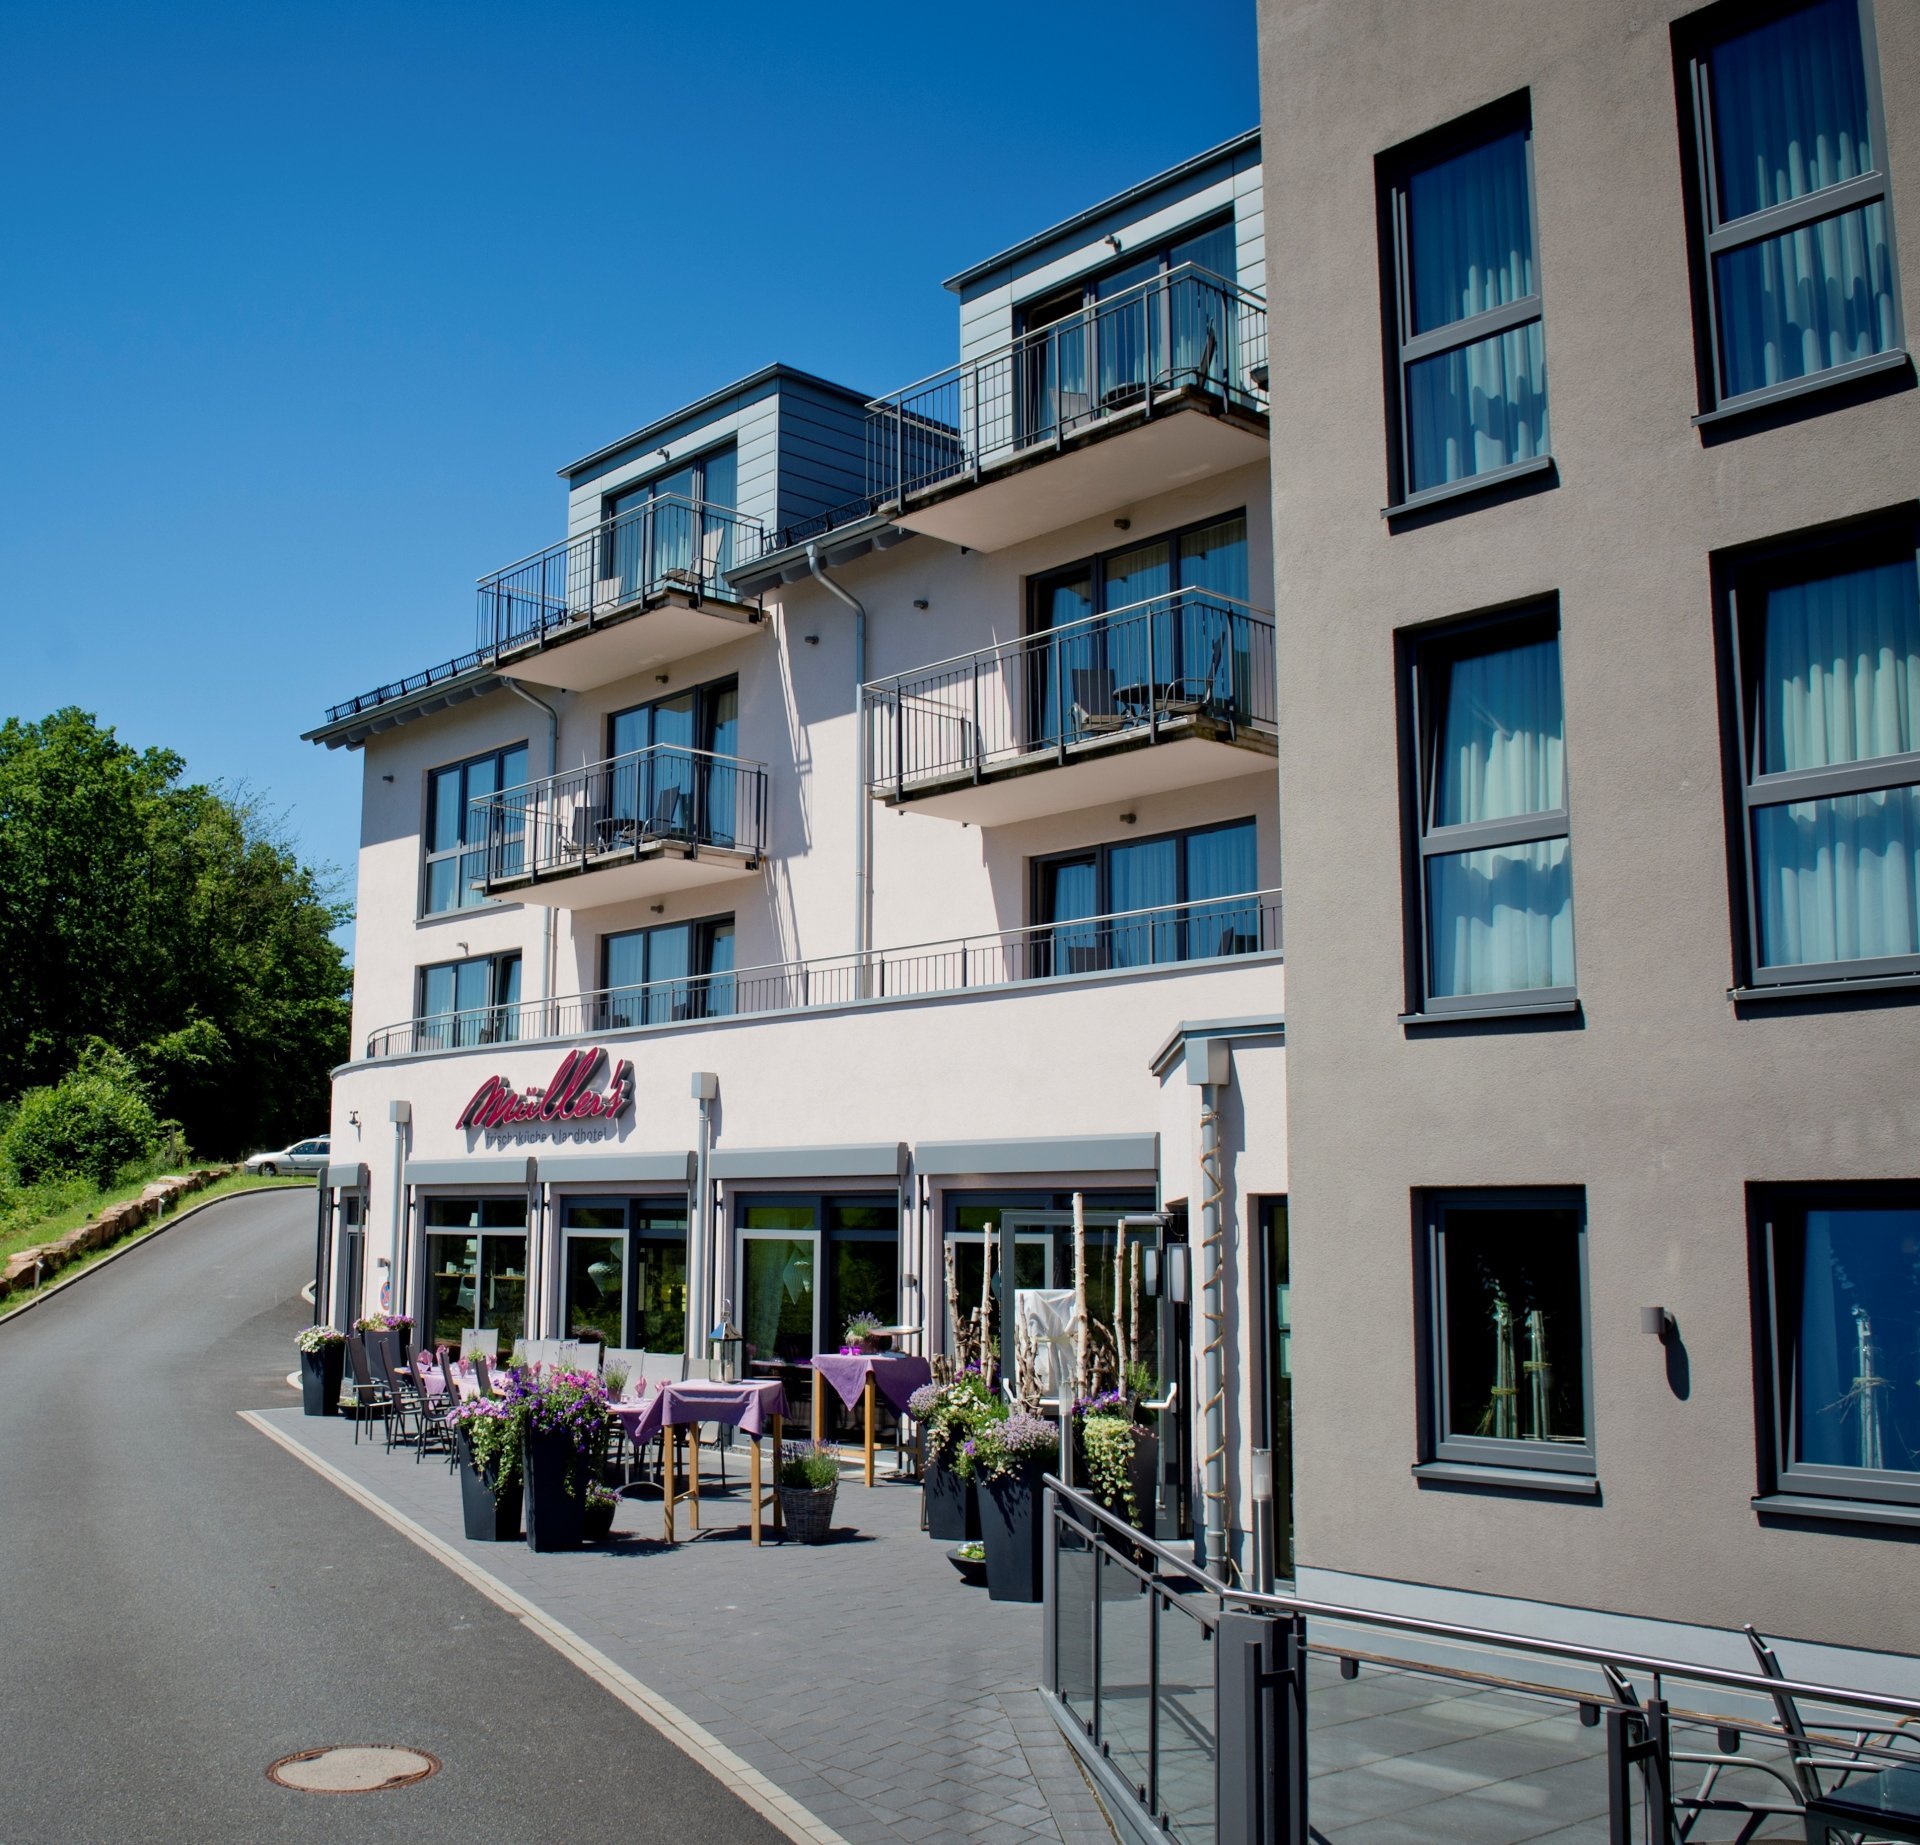 5 Tage Wandern bei Müller´s – Müller´s Landhotel (3 Sterne) in Mespelbrunn, Bayern inkl. Halbpension